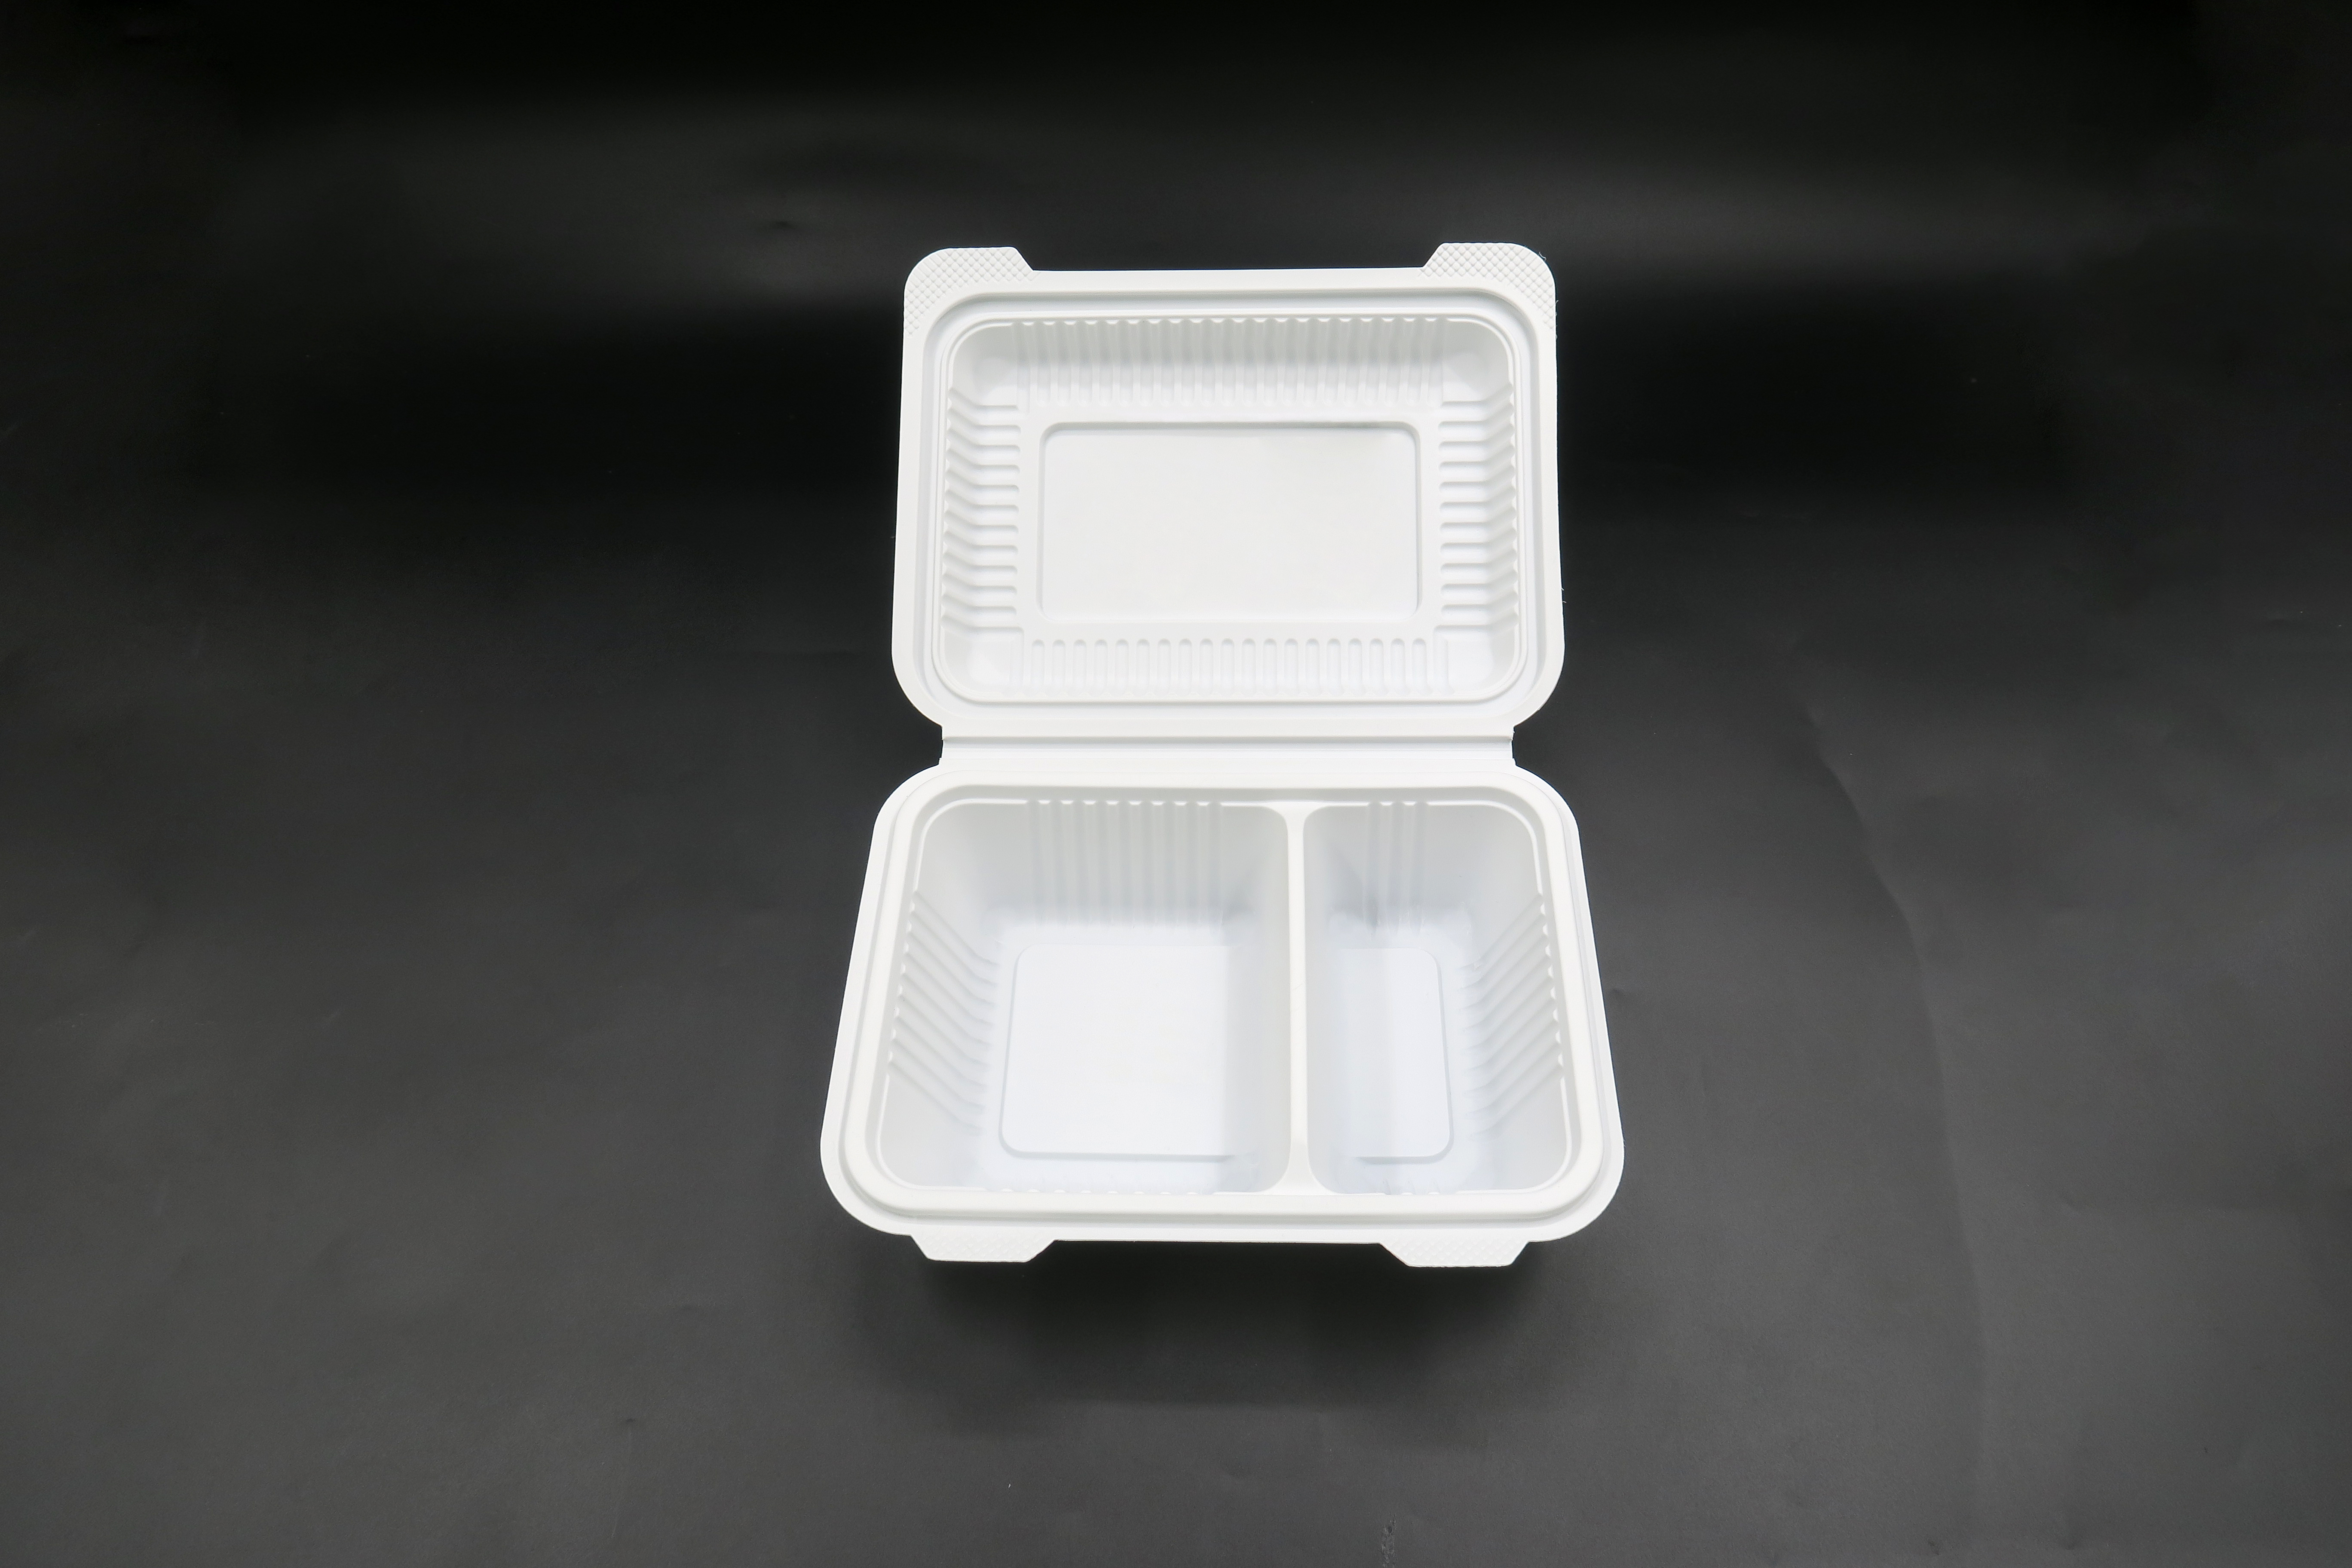 Los envases de comida de la cubierta del paquete DEMI disponibles llevan las cajas 